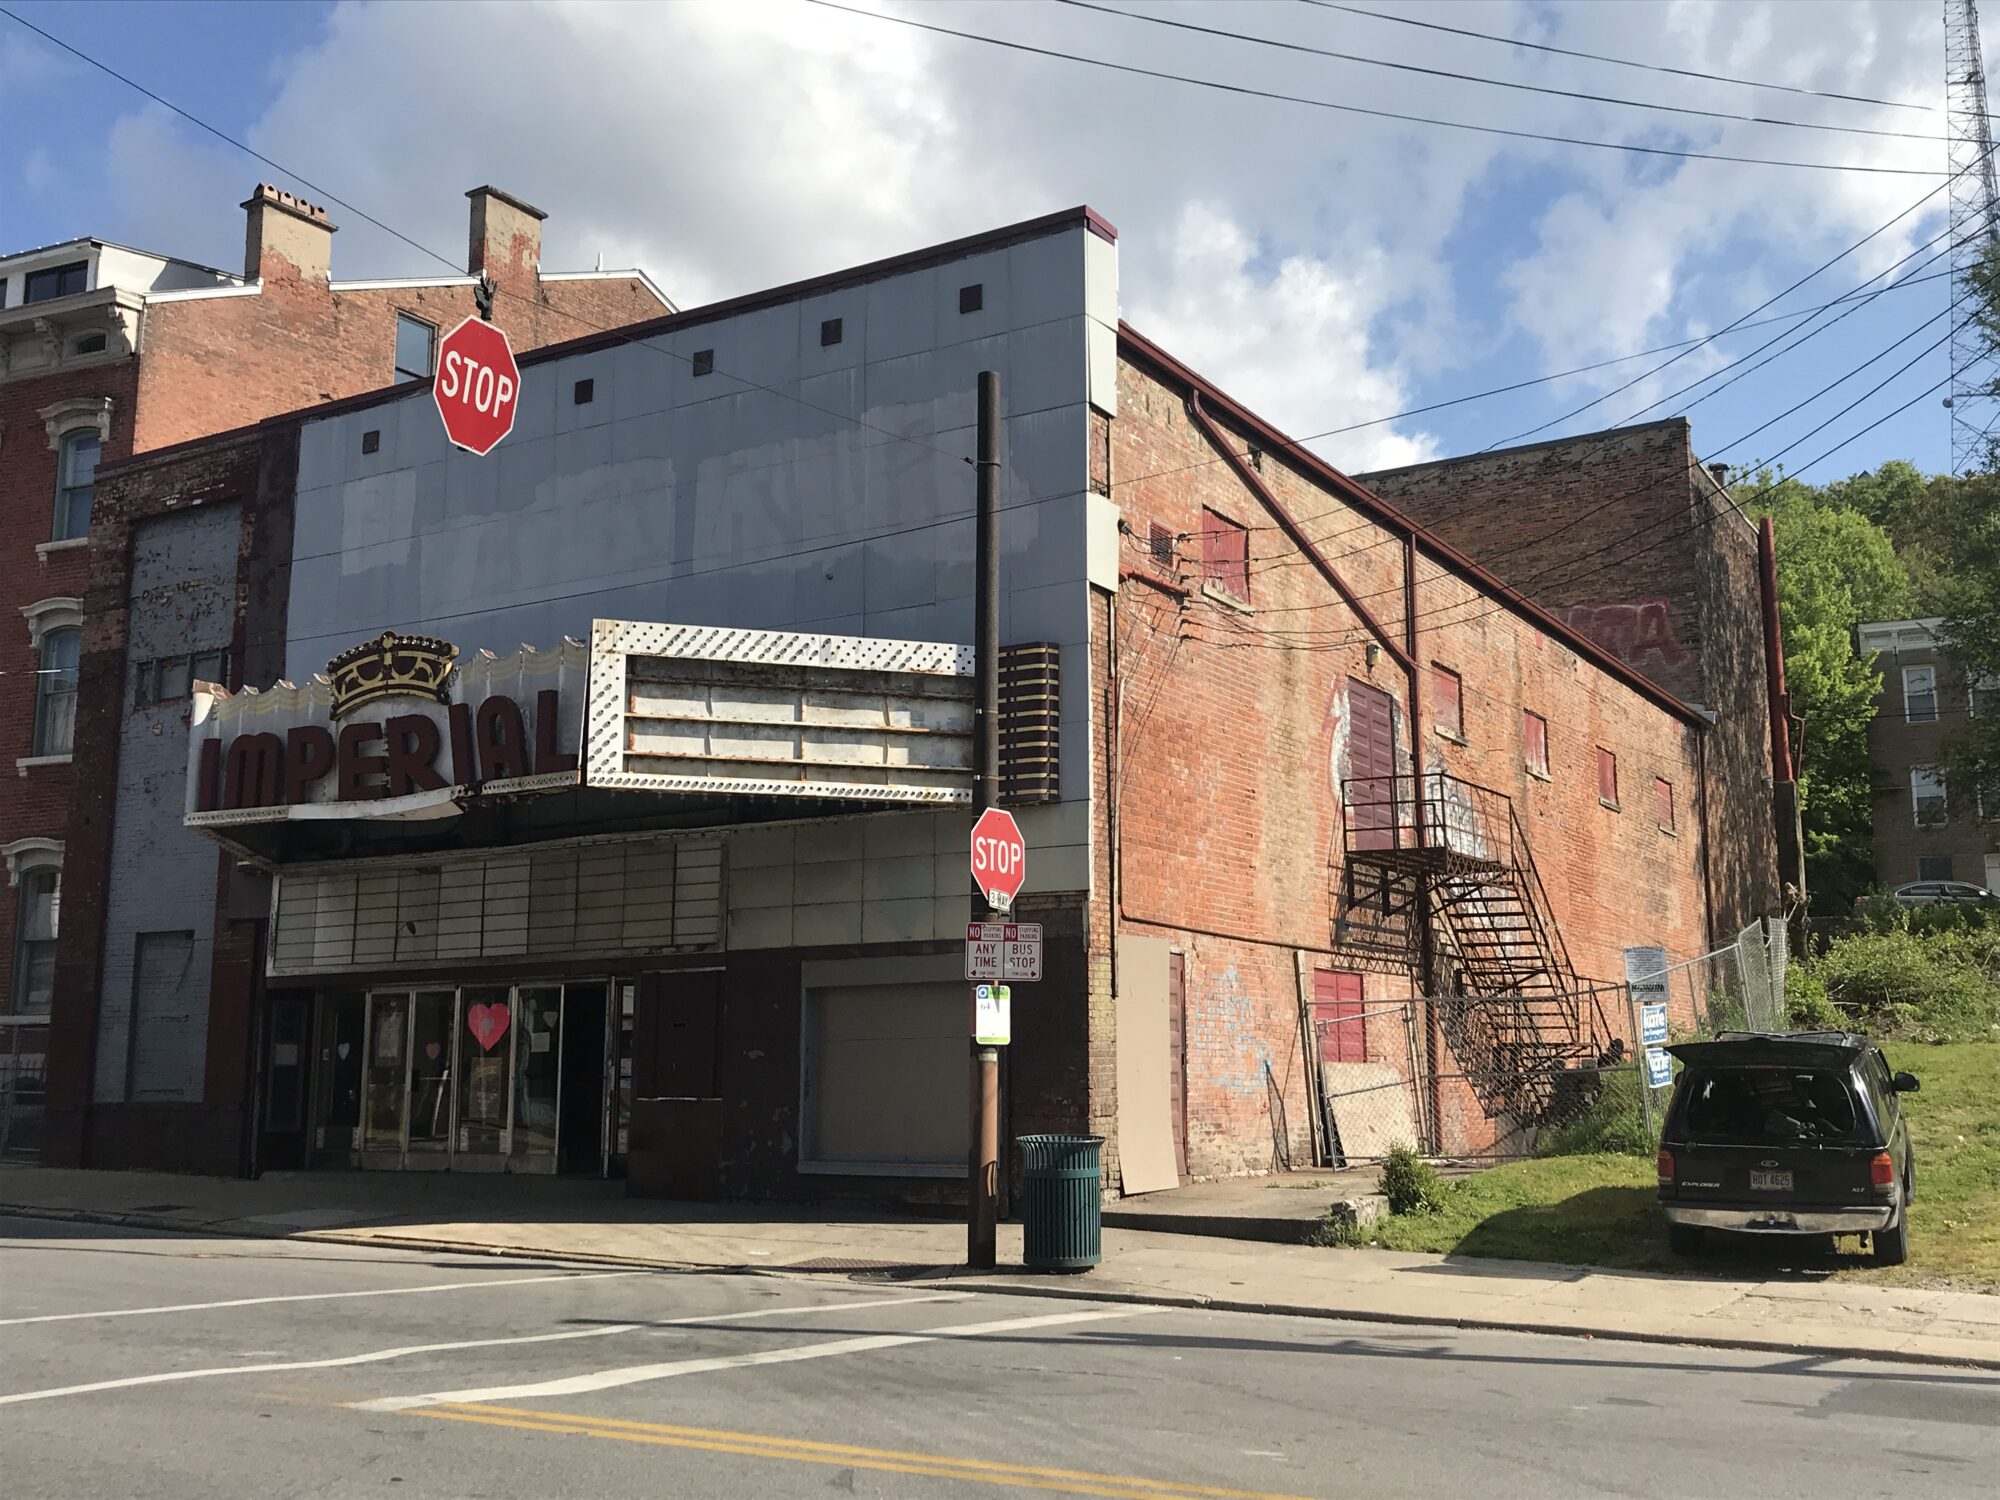 Imperial Theatre Mohawk - Cincinnati, Ohio